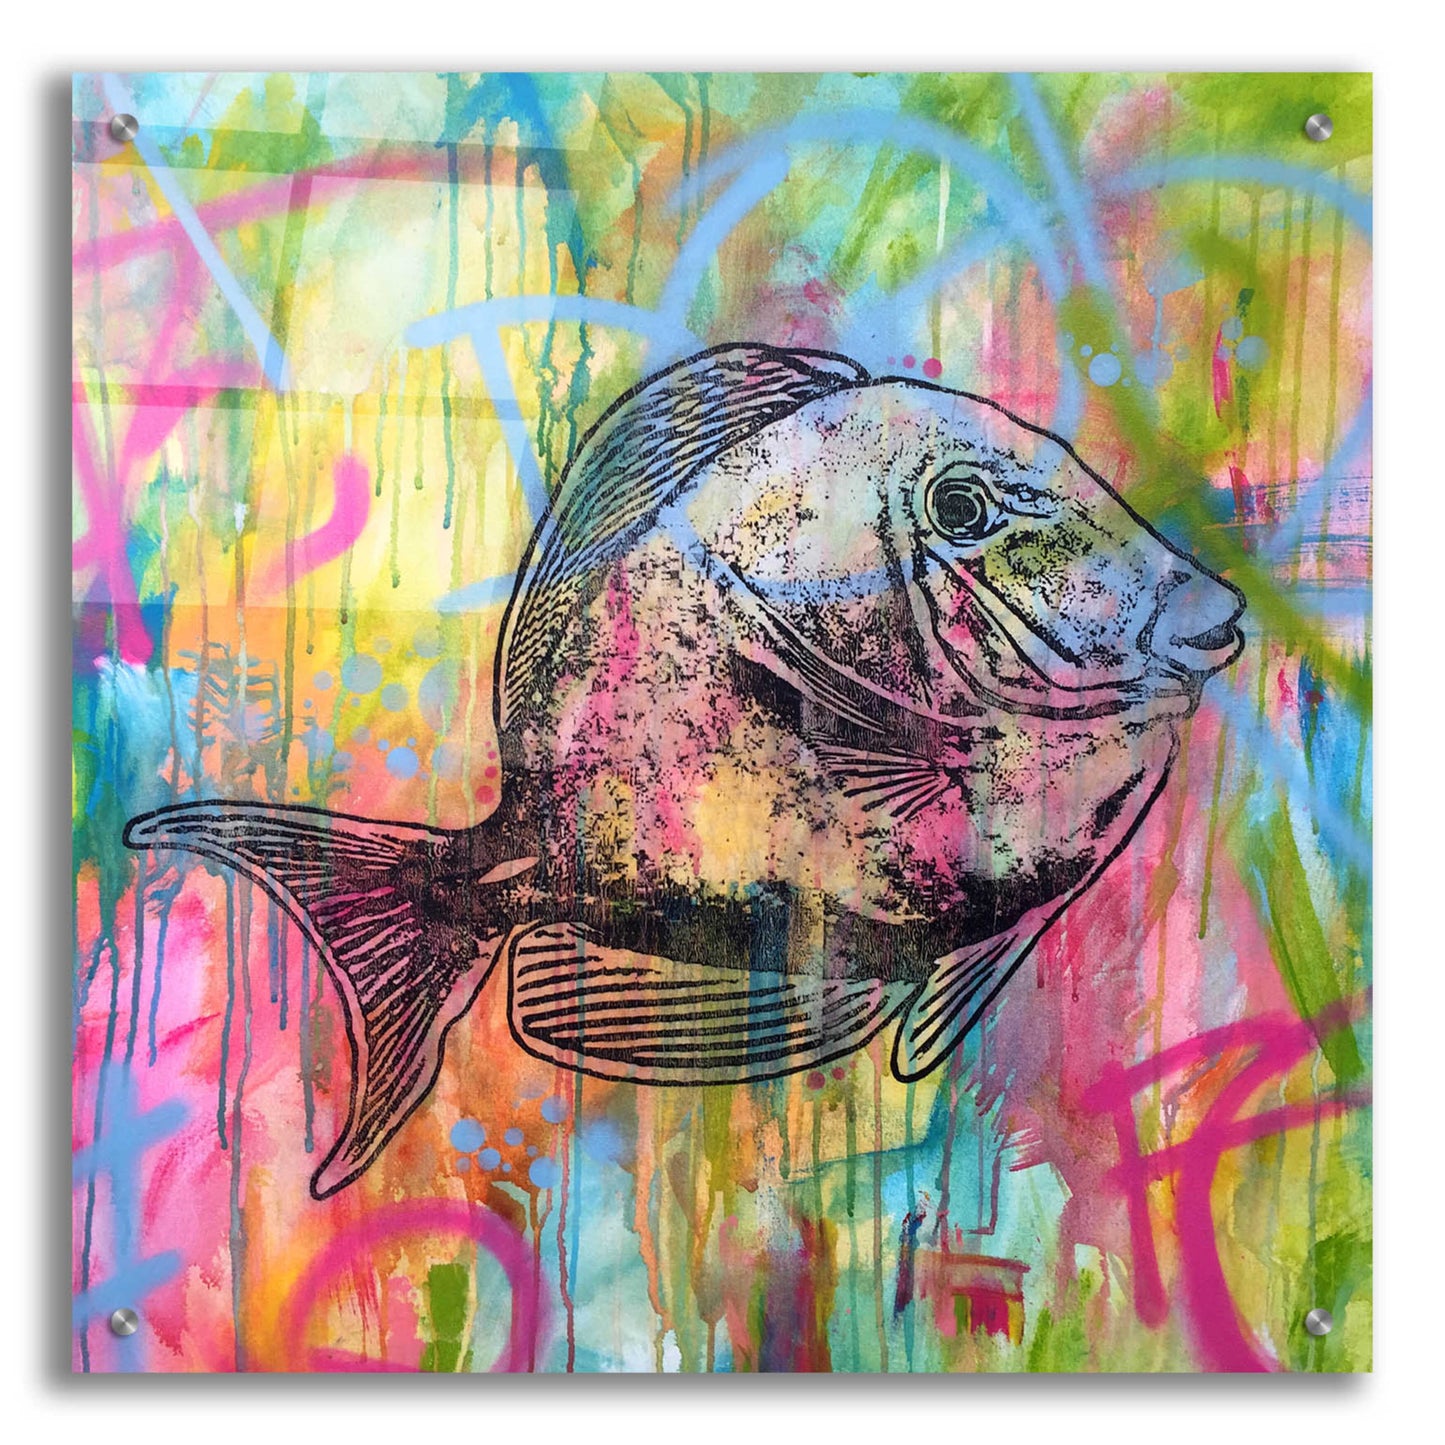 Epic Art 'Fishy Spray' by Dean Russo, Acrylic Glass Wall Art,24x24